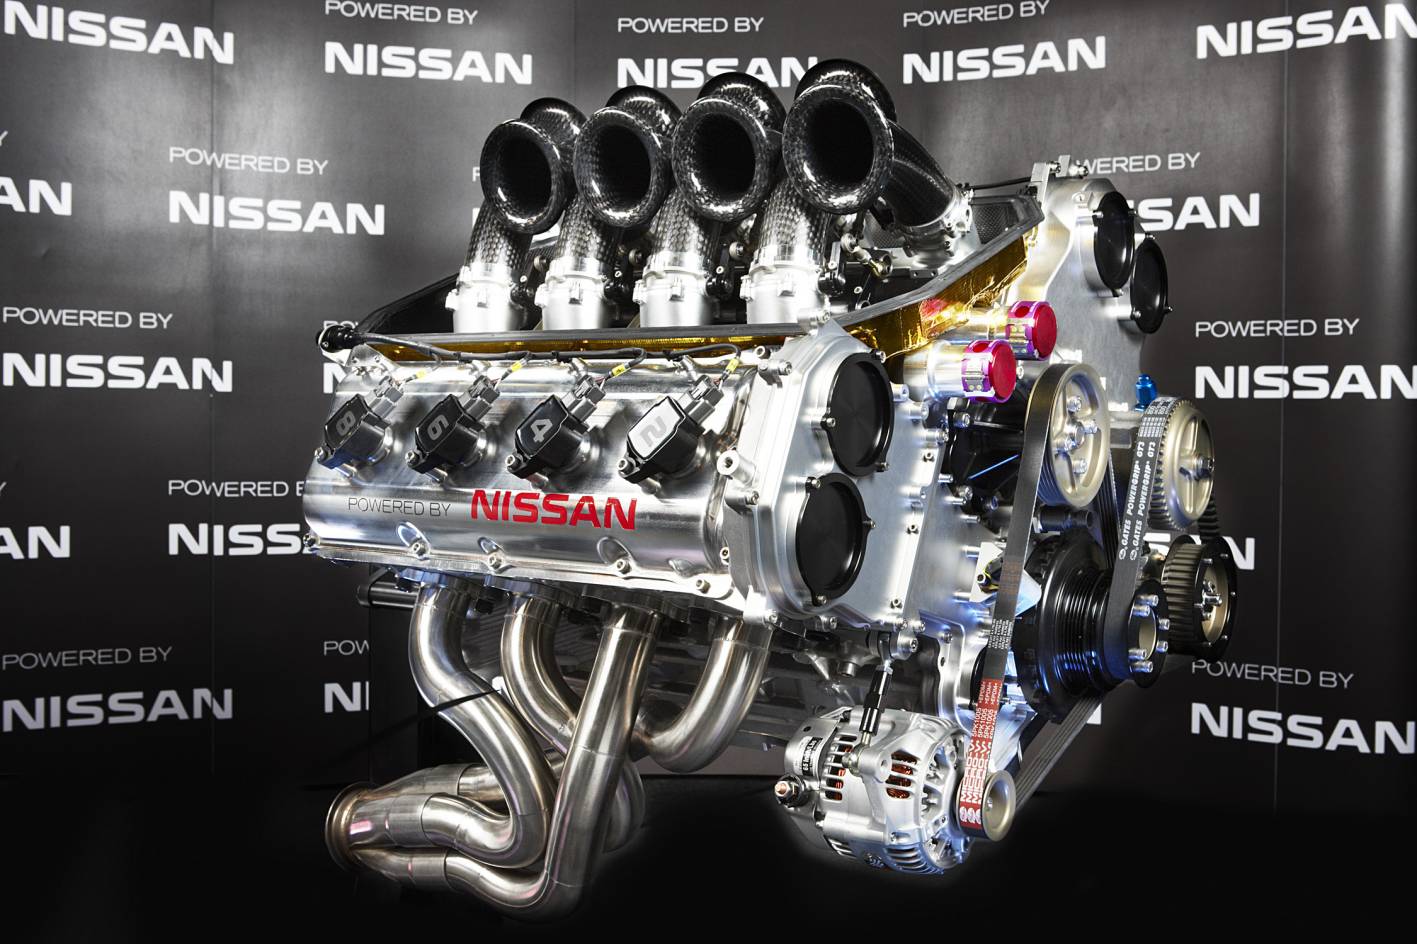 Nissan motors vs nissan computer #7